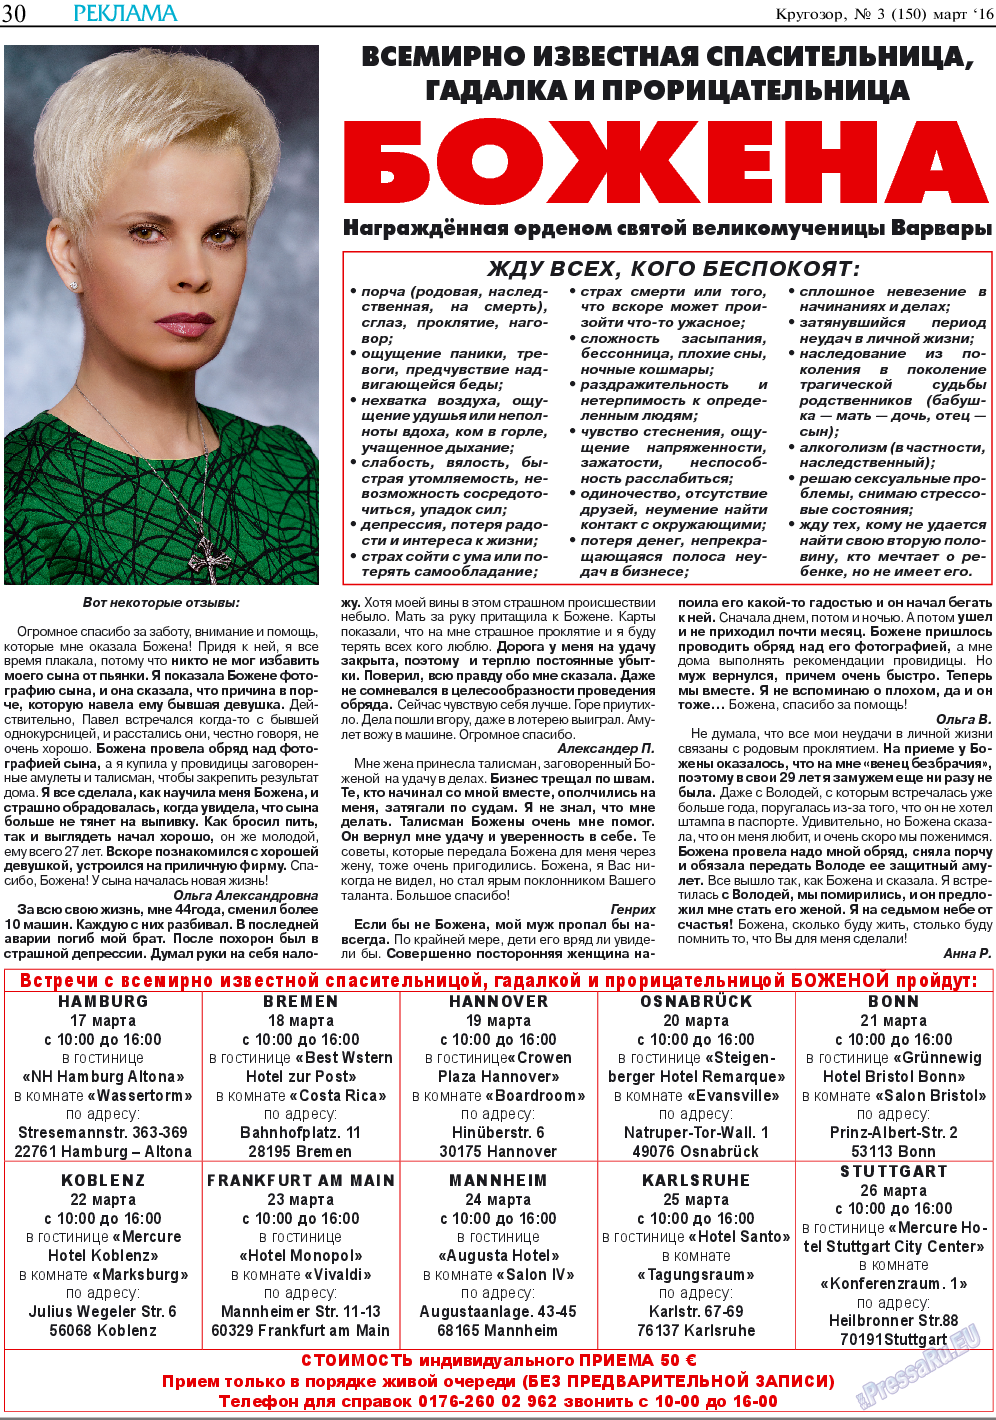 Кругозор, газета. 2016 №3 стр.30